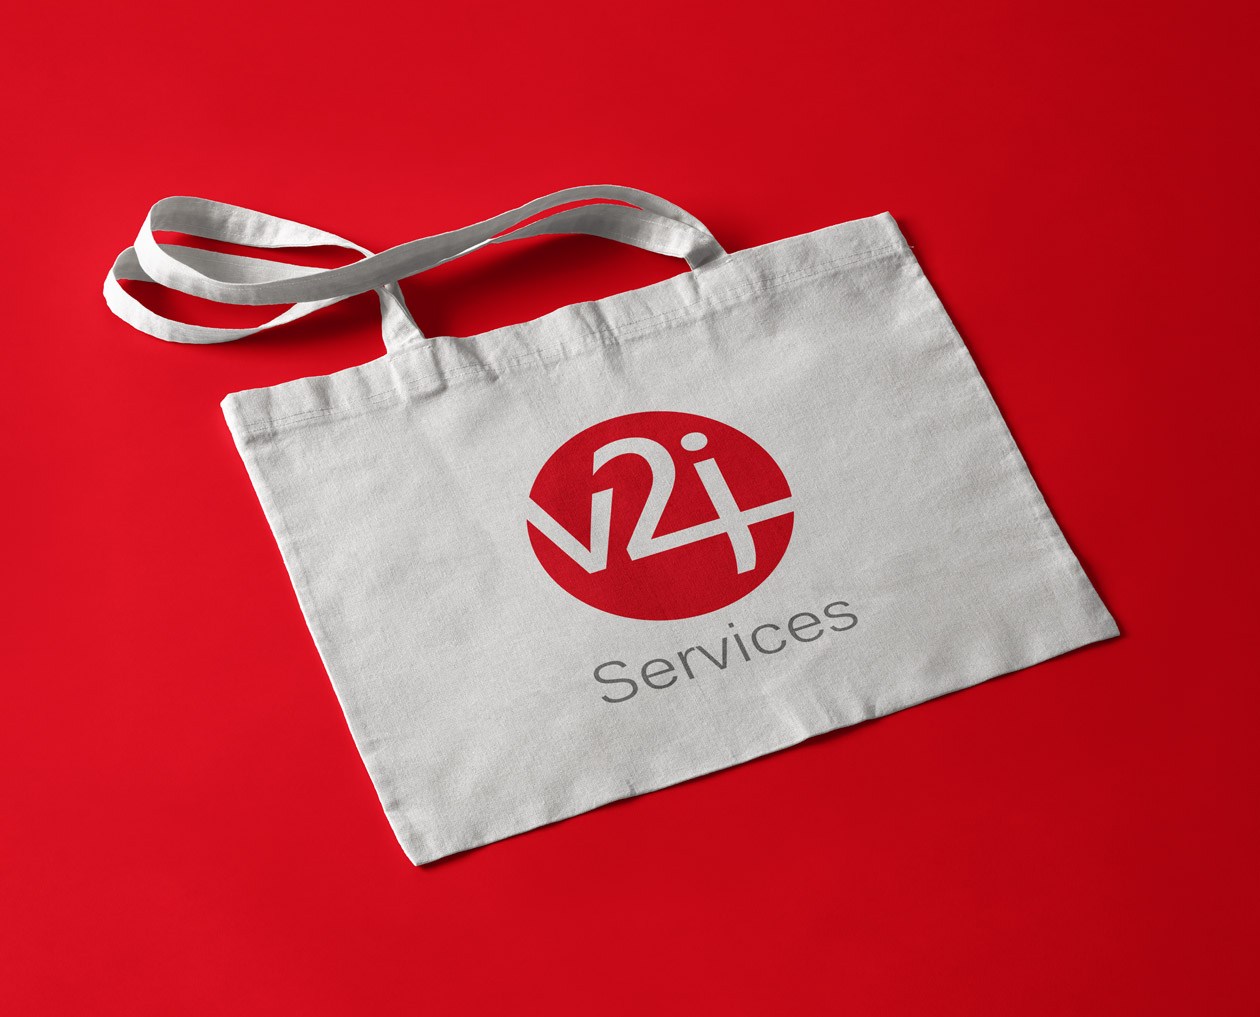 v2j services logo design webdesign